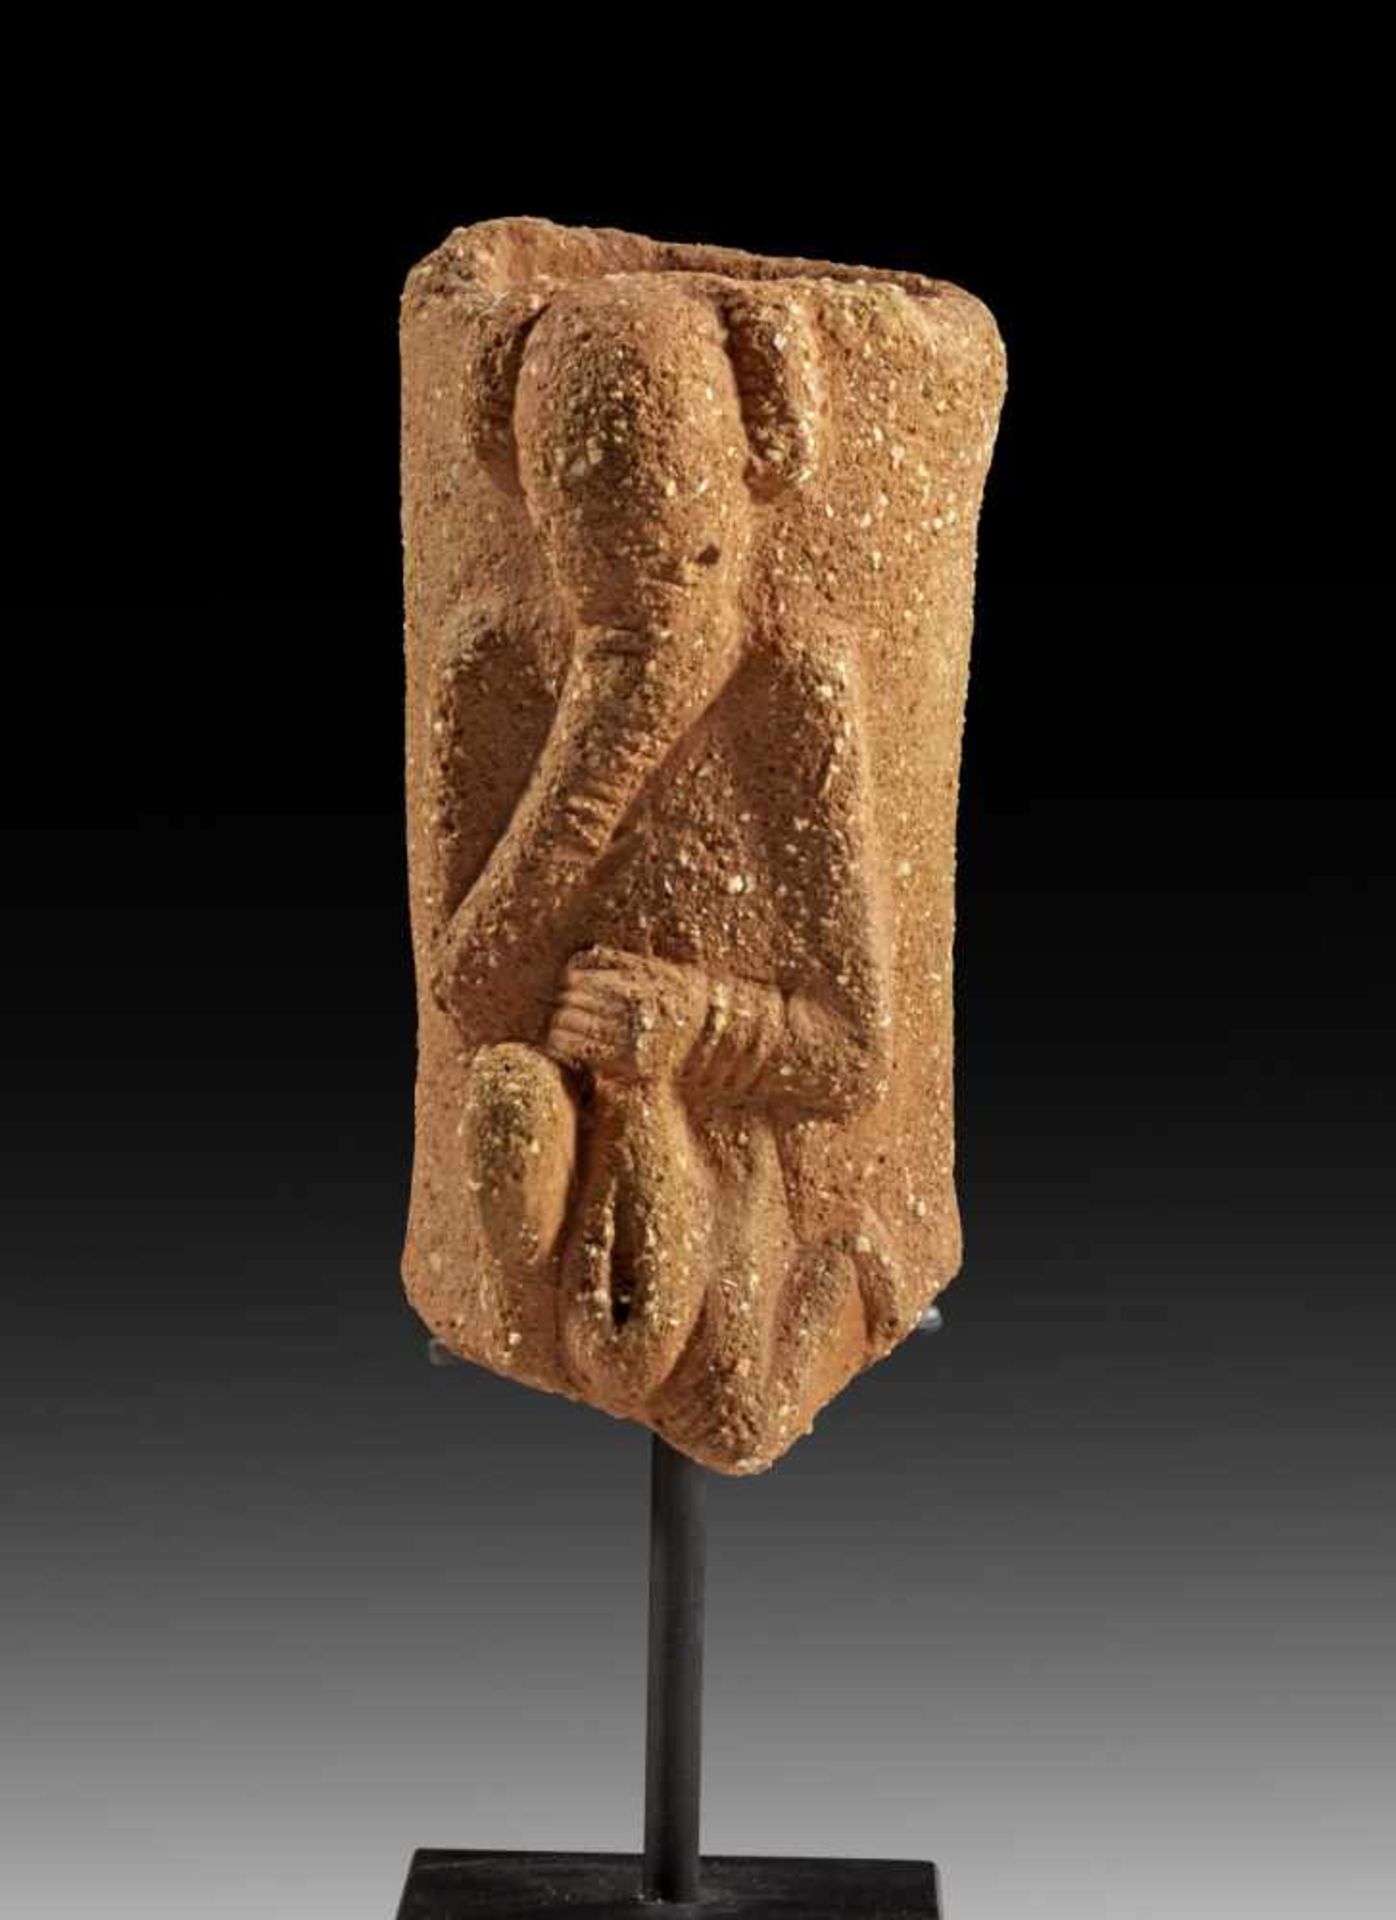 Beinfragment aus Terrakotta. Nok, Nigeria, ca. 500 v. - 200 n. Chr. H 17,5cm. Intakt.